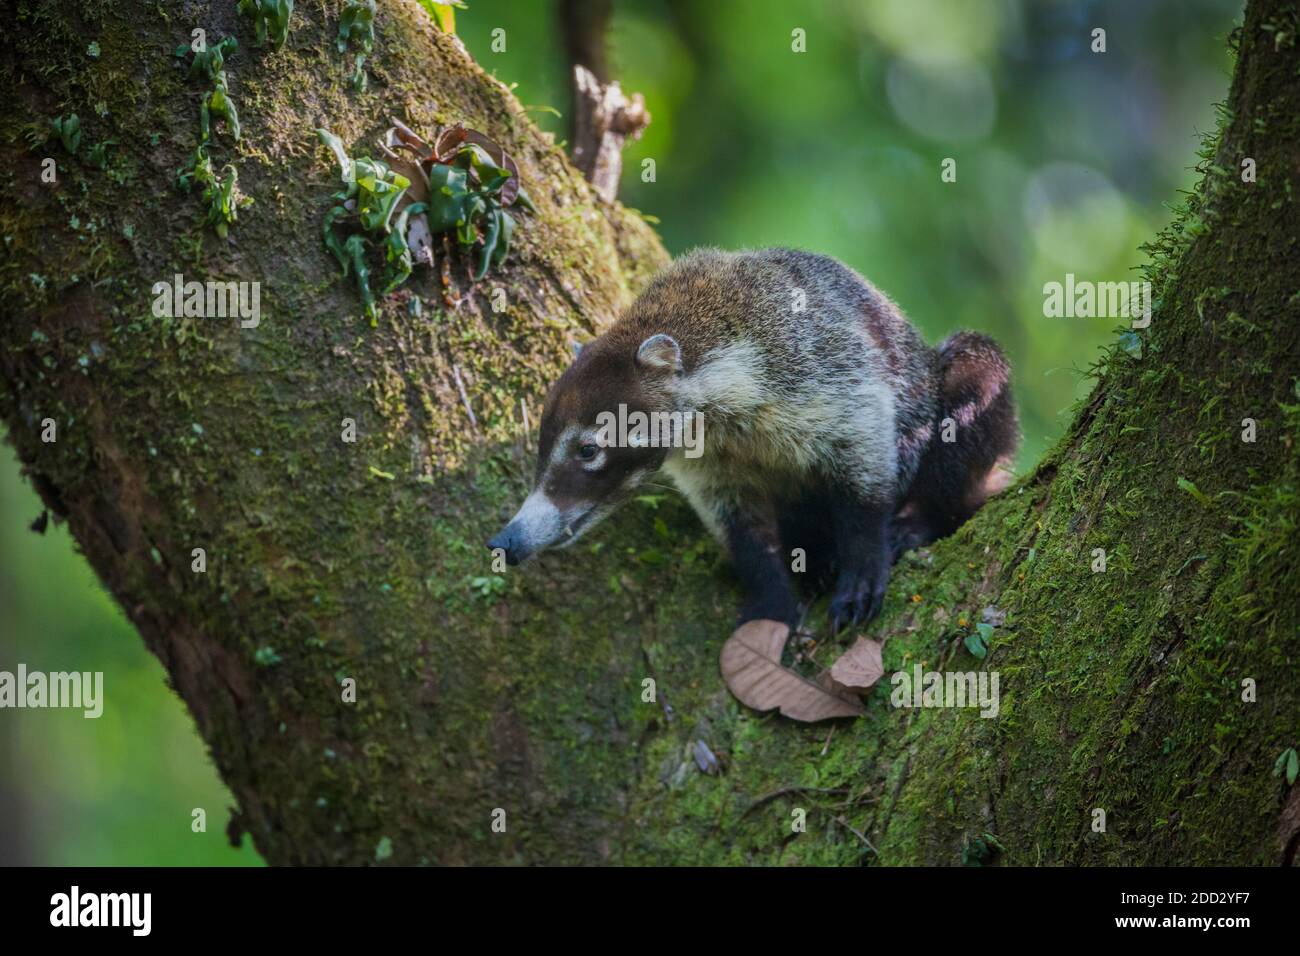 Panama faune avec un coati à nez blanc, Nasua narica, dans un arbre dans la forêt tropicale du parc national de Soberania, République de Panama, Amérique centrale. Banque D'Images